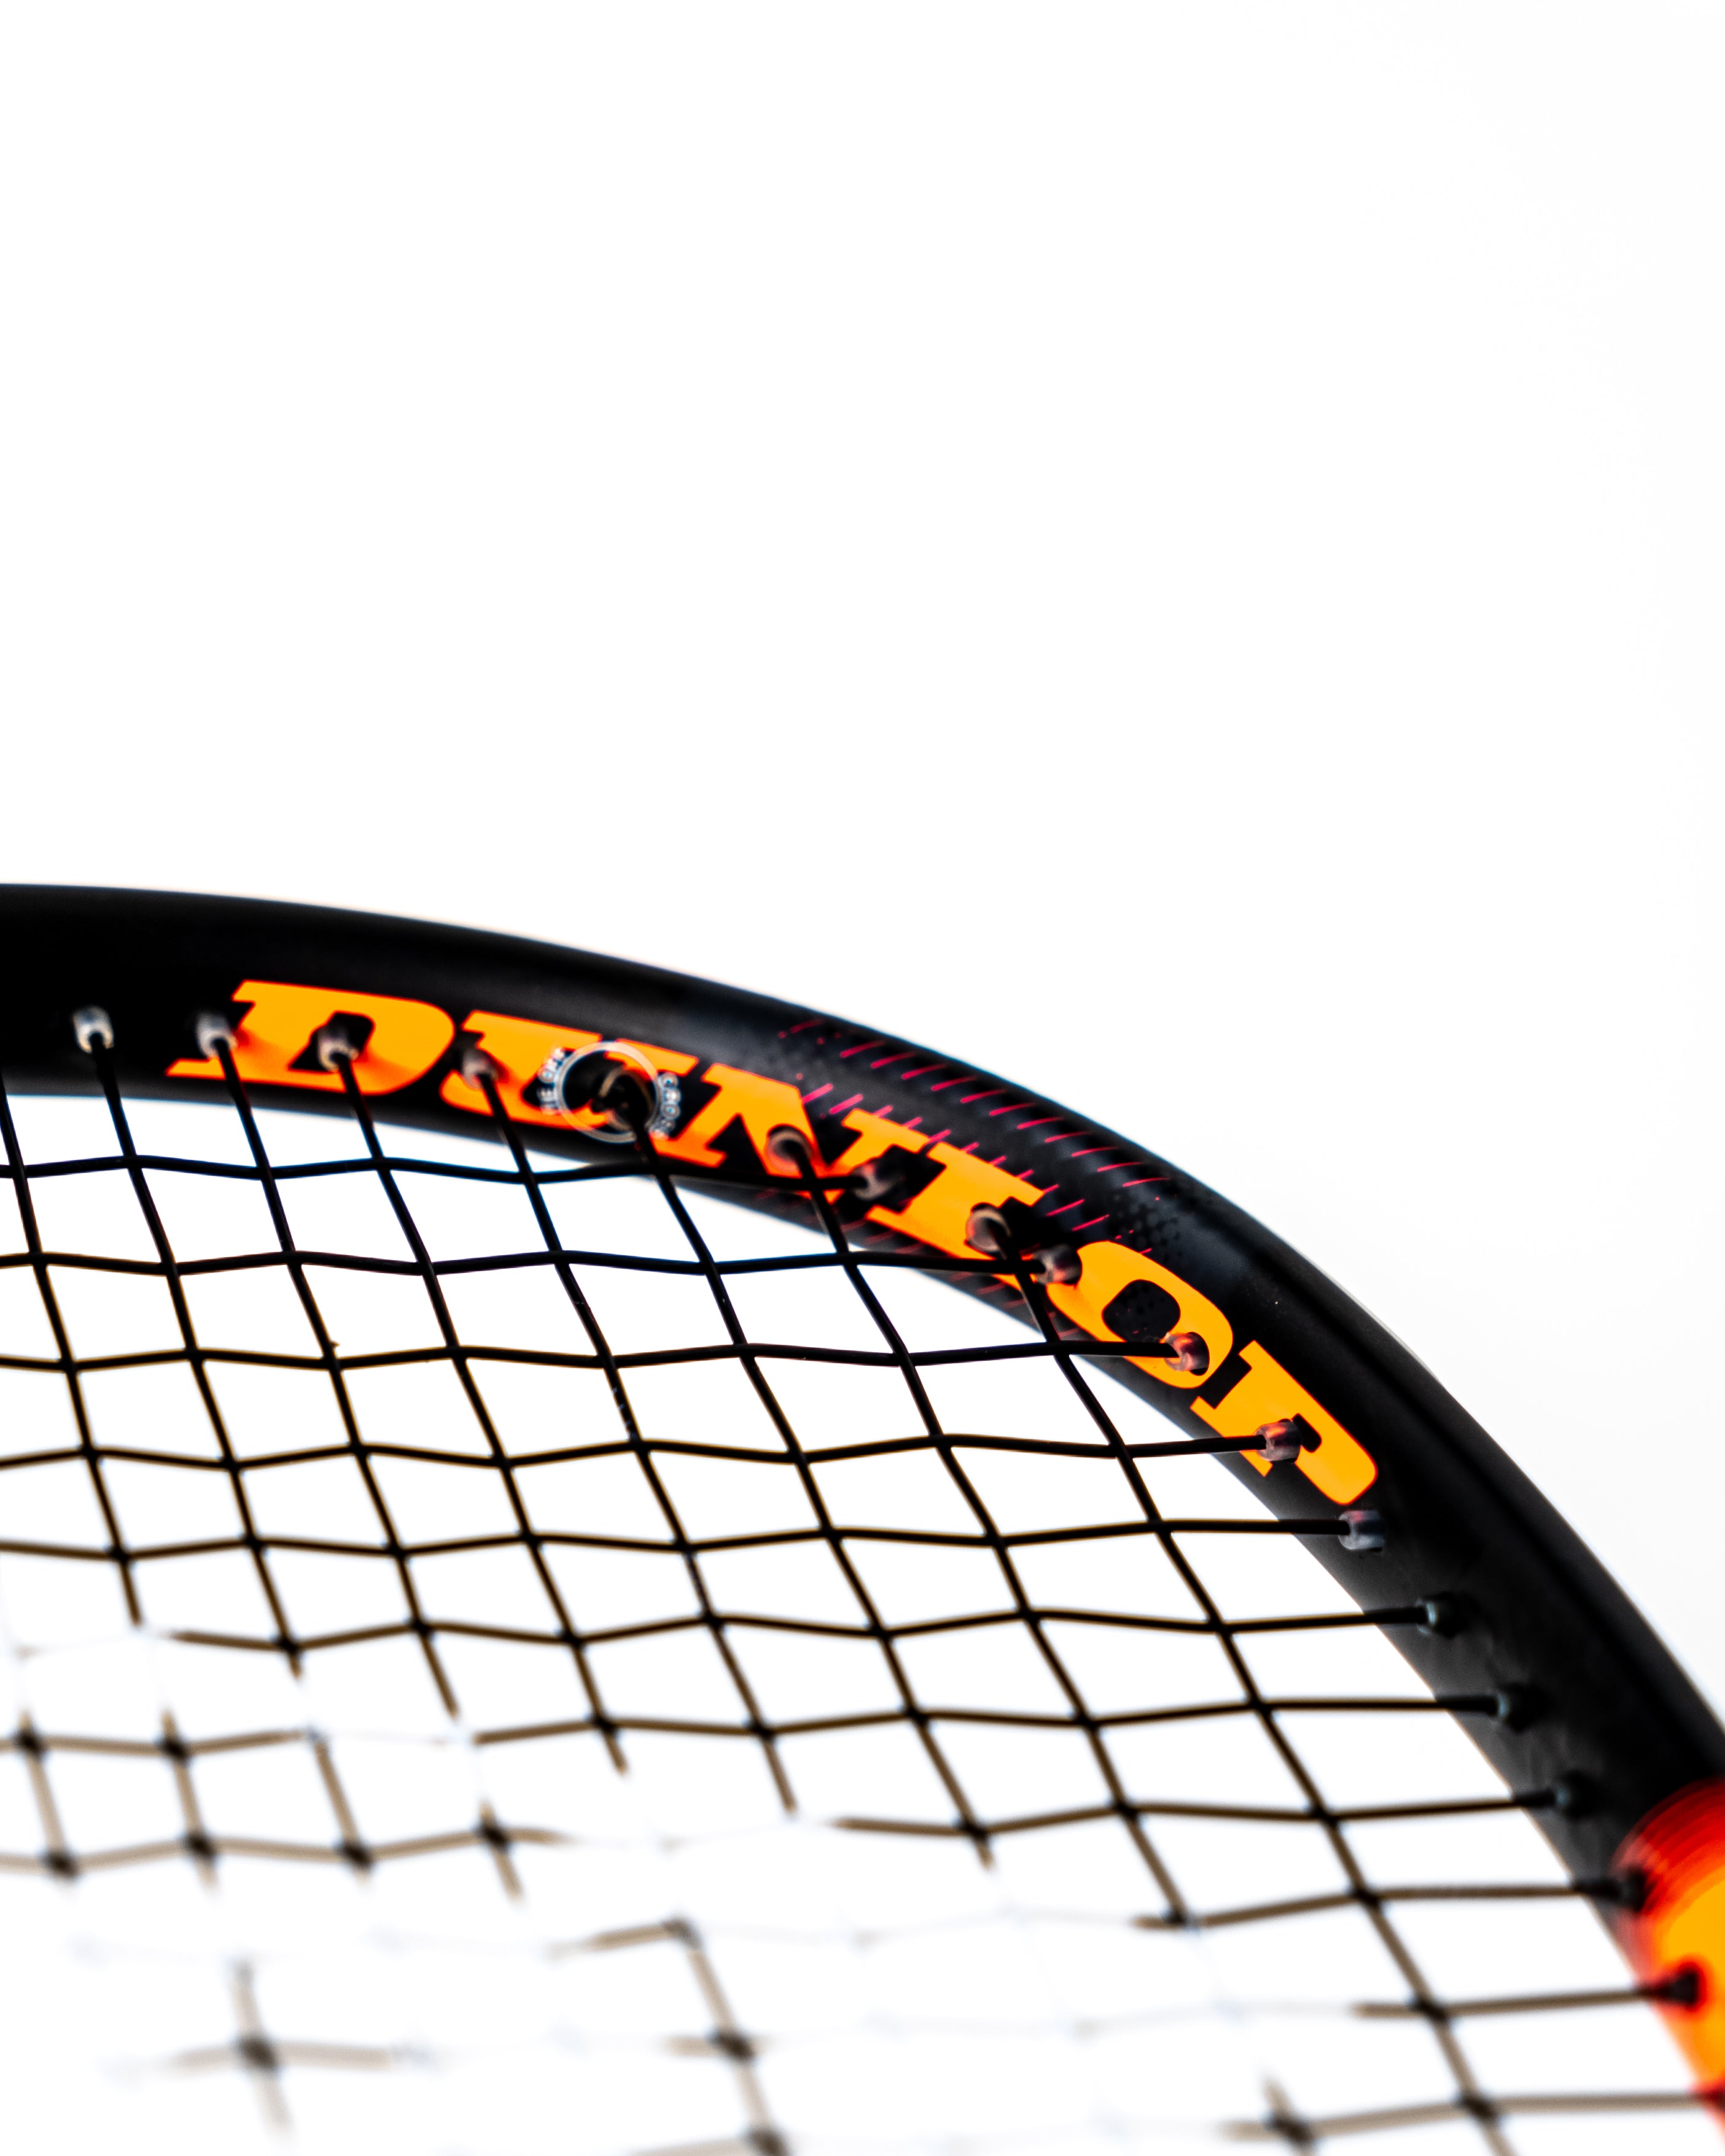 Dunlop Squash Hyperfibre XT Revel Pro